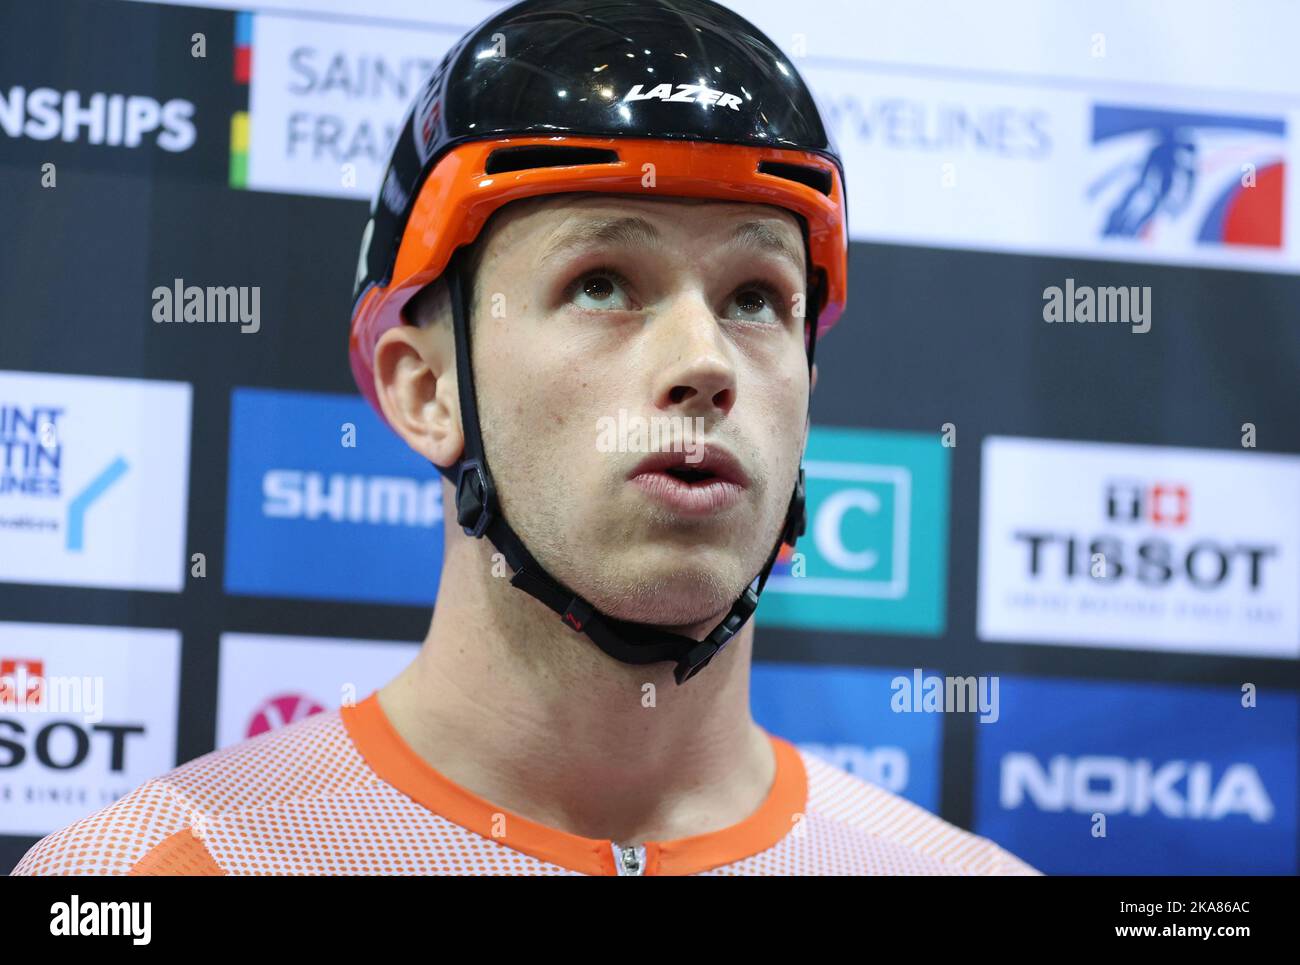 Harrie Lavreysen dai Paesi Bassi ai Campionati mondiali di ciclismo su pista UCI 2022 a Saint-Quentin-en-Yvelines (Francia). Foto Stock